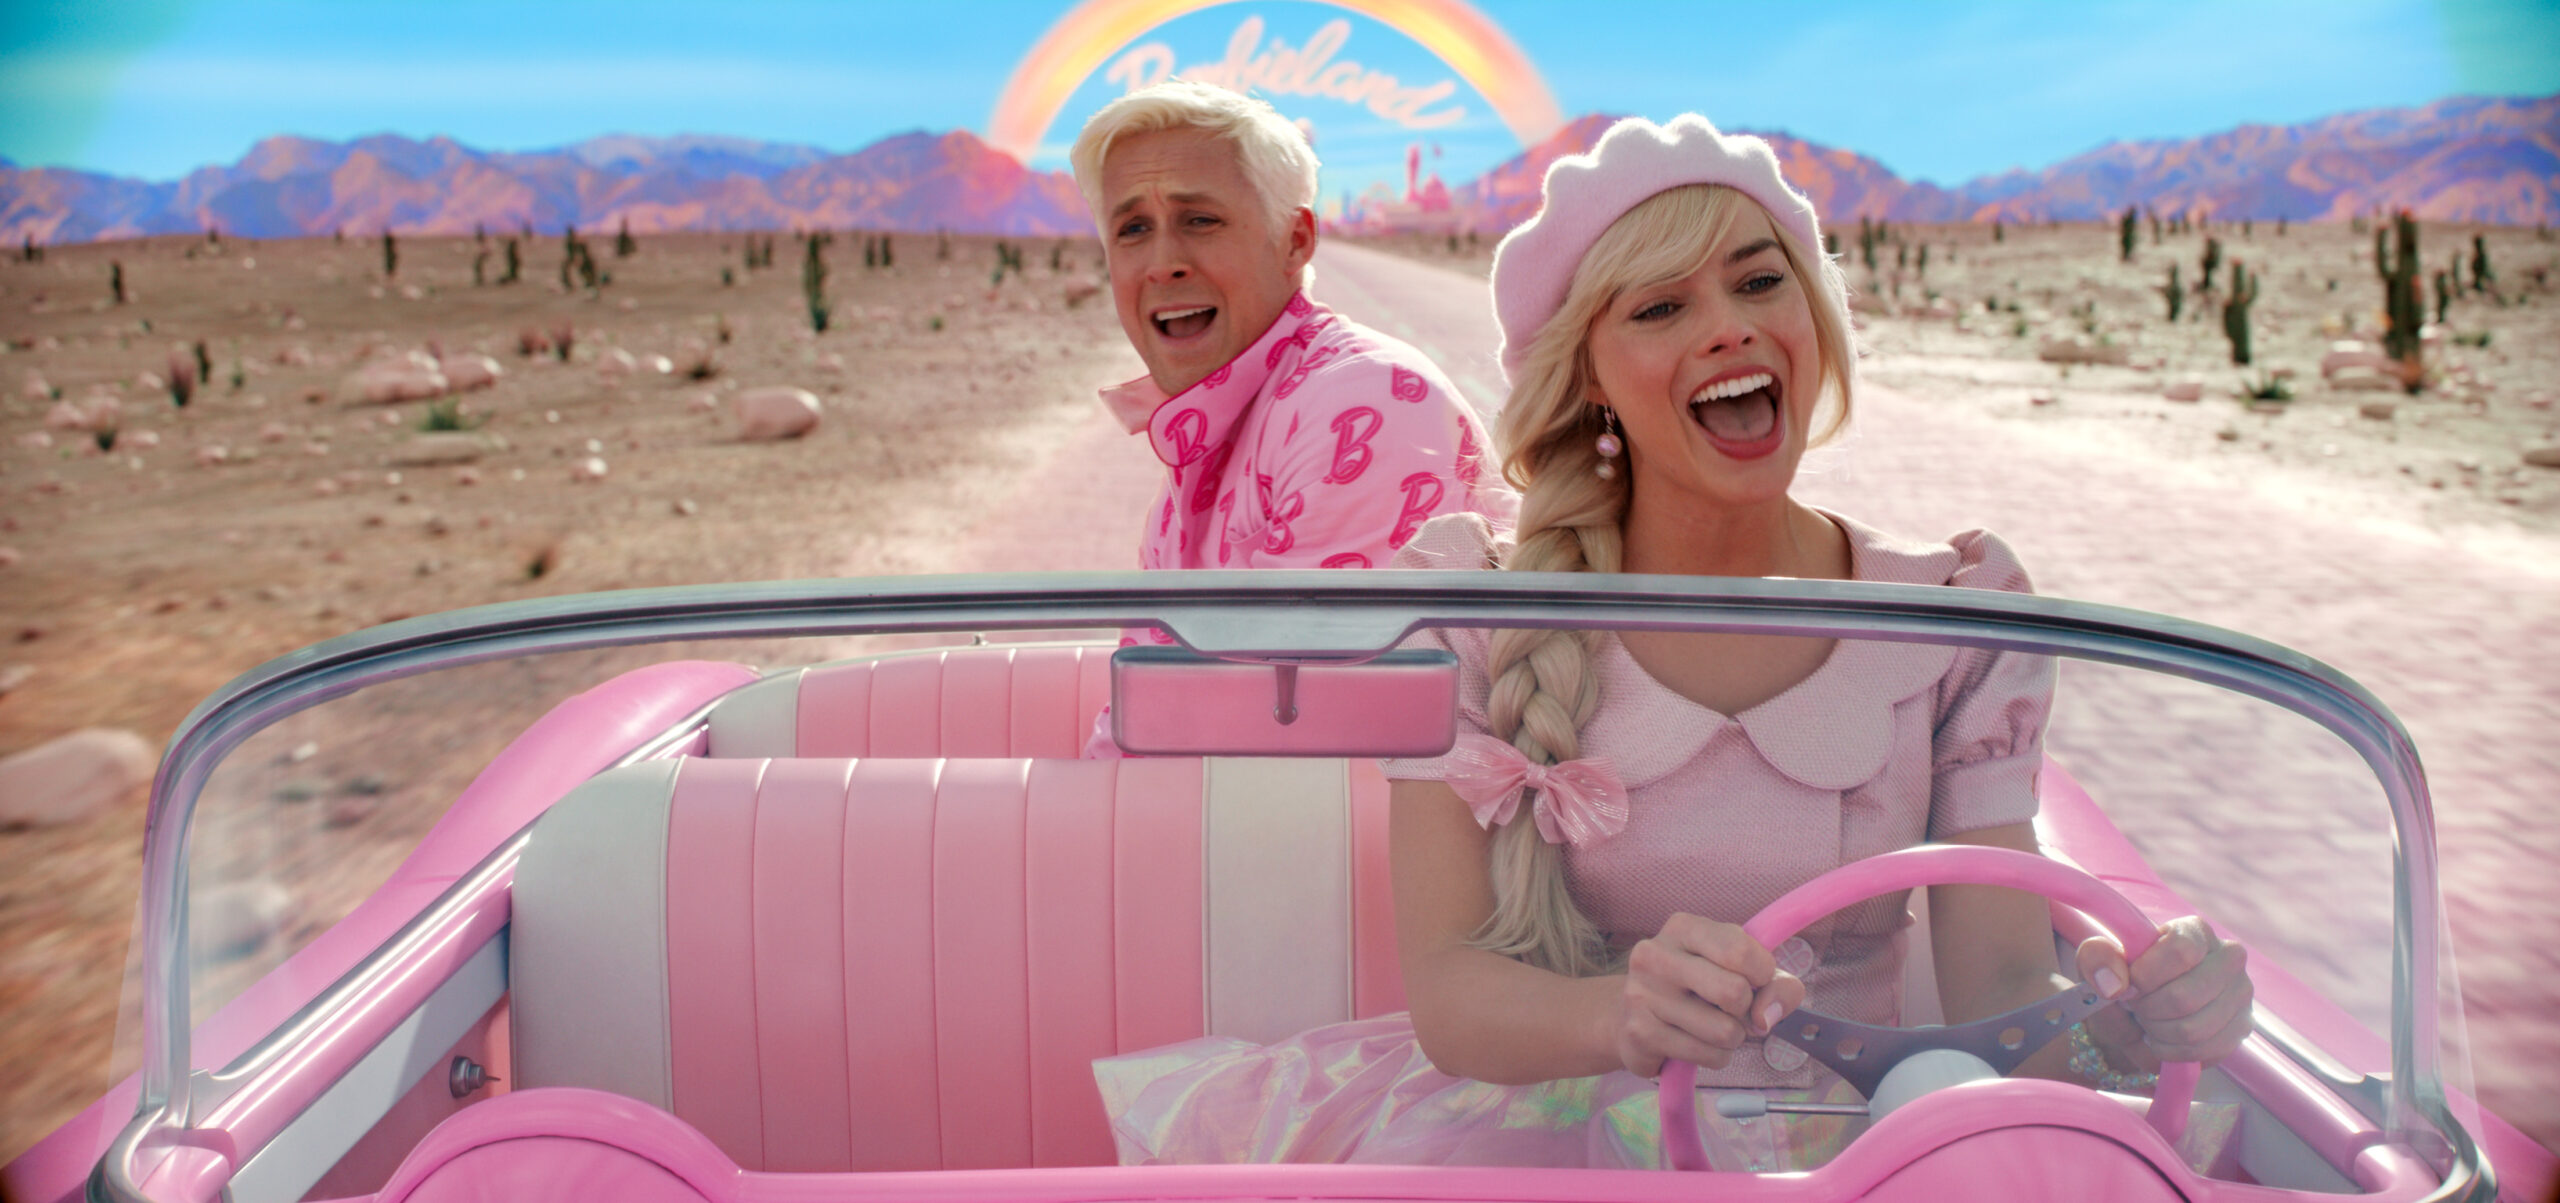 Ryan Gosling als Ken und Margot Robbie als Barbie in einer Szene des Films „Barbie“.